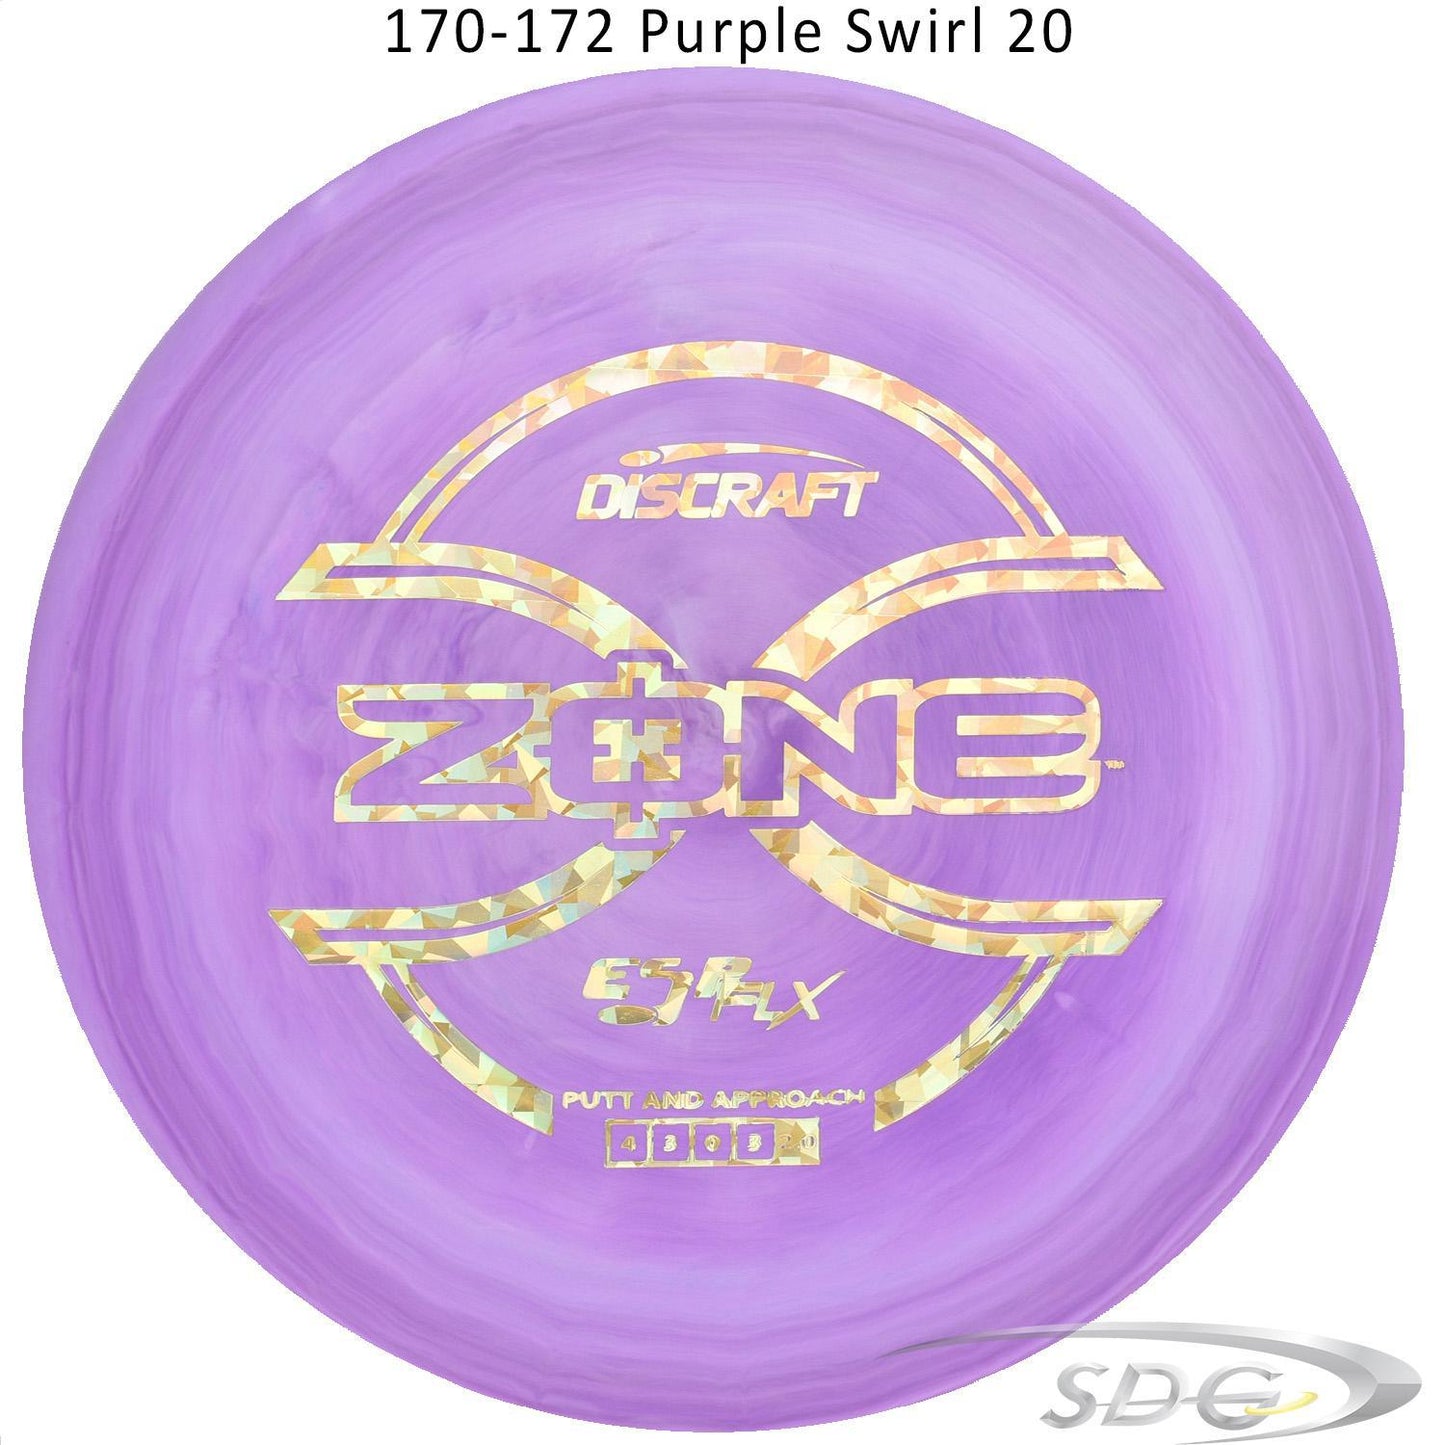 discraft-esp-flx-zone-disc-golf-putter 170-172 Purple Swirl 20 